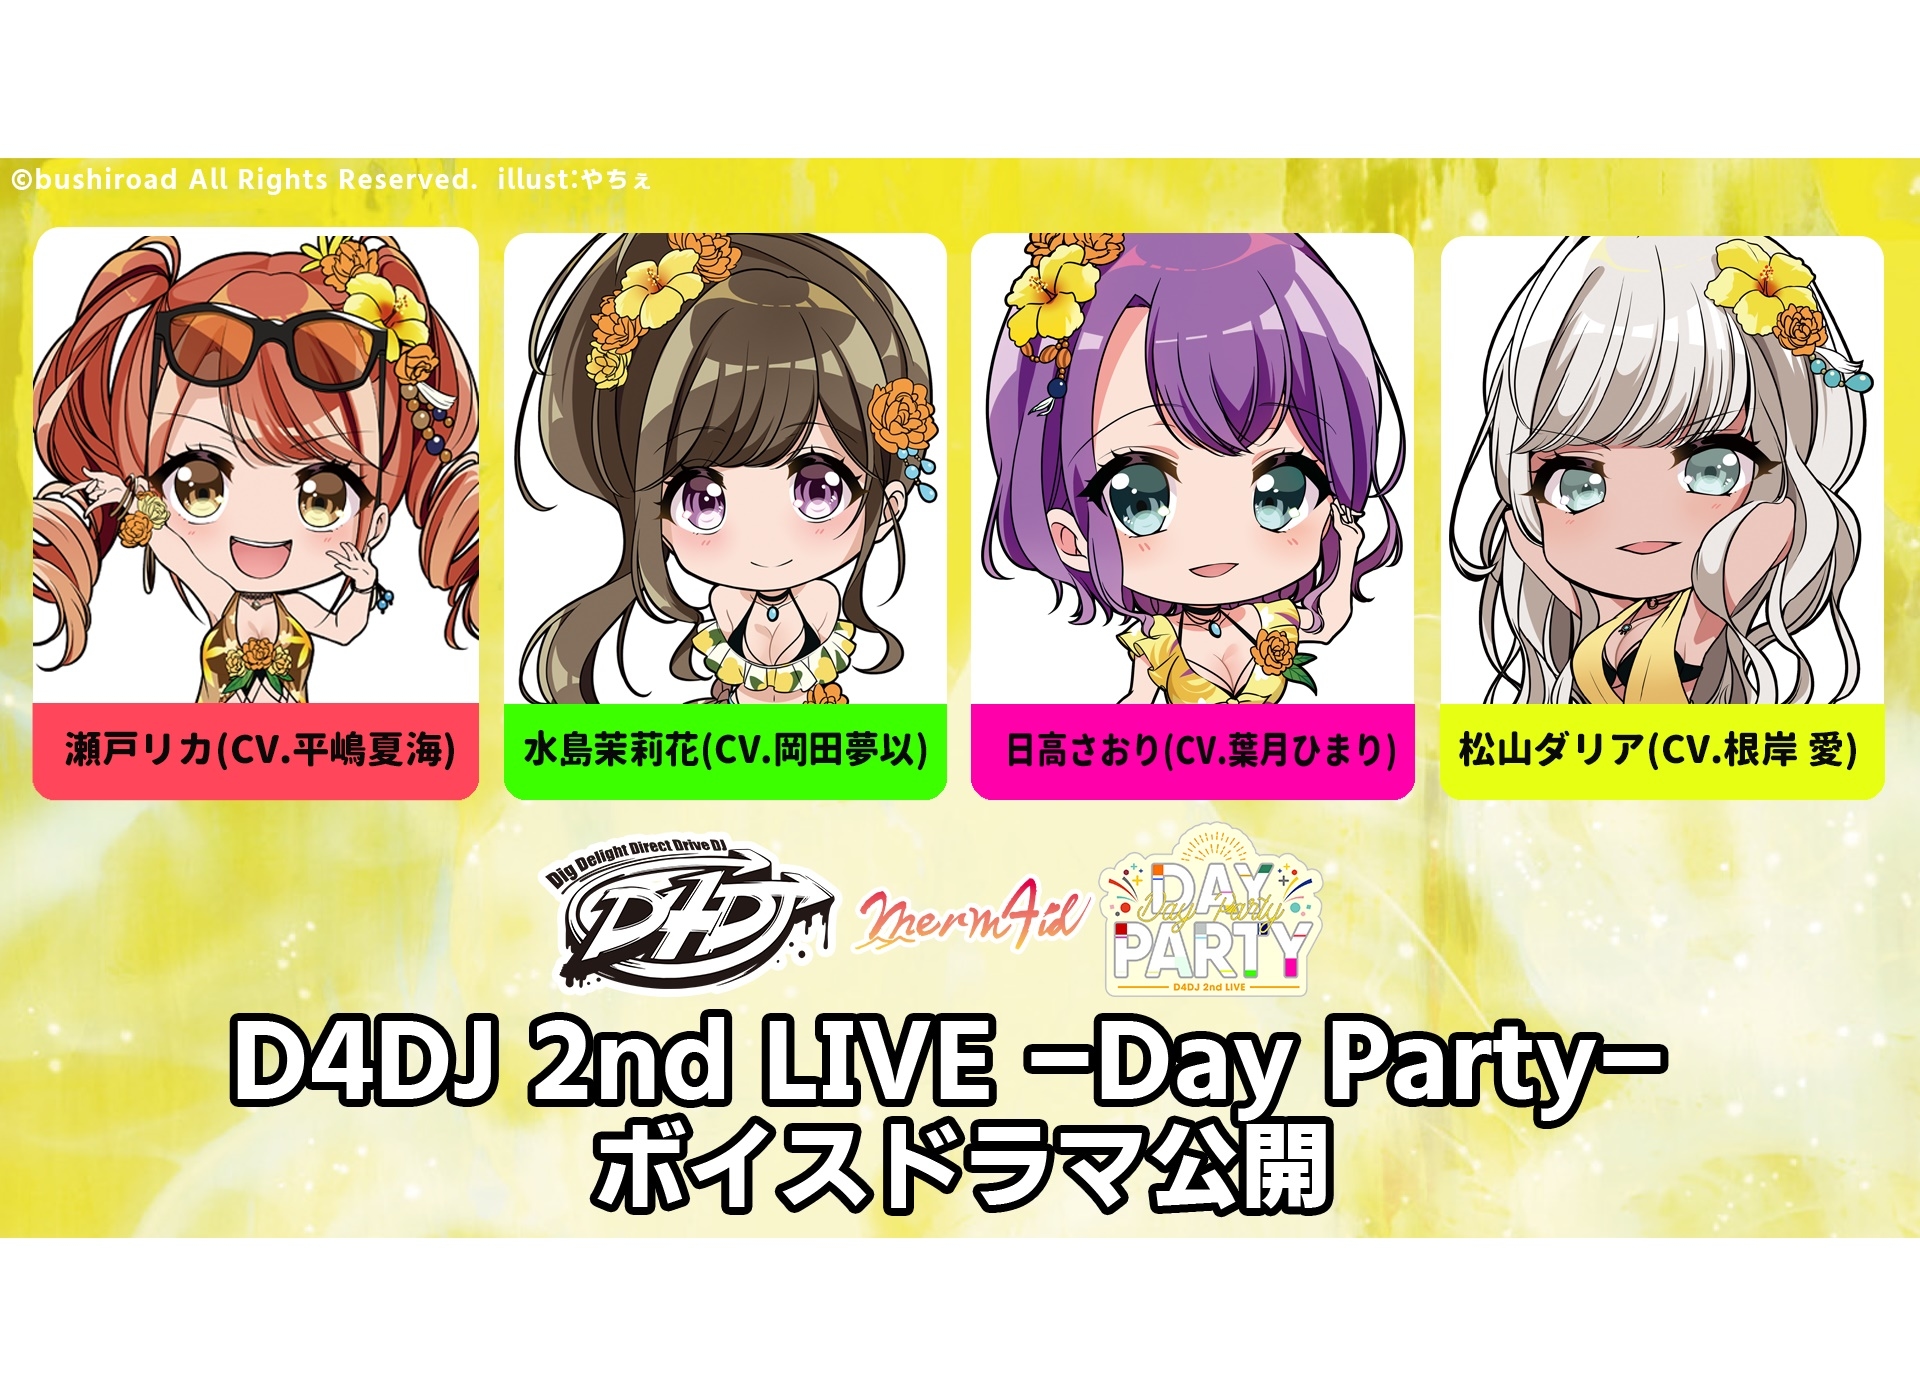 「D4DJ 2nd LIVE Merm4id ミニボイスドラマ」公開